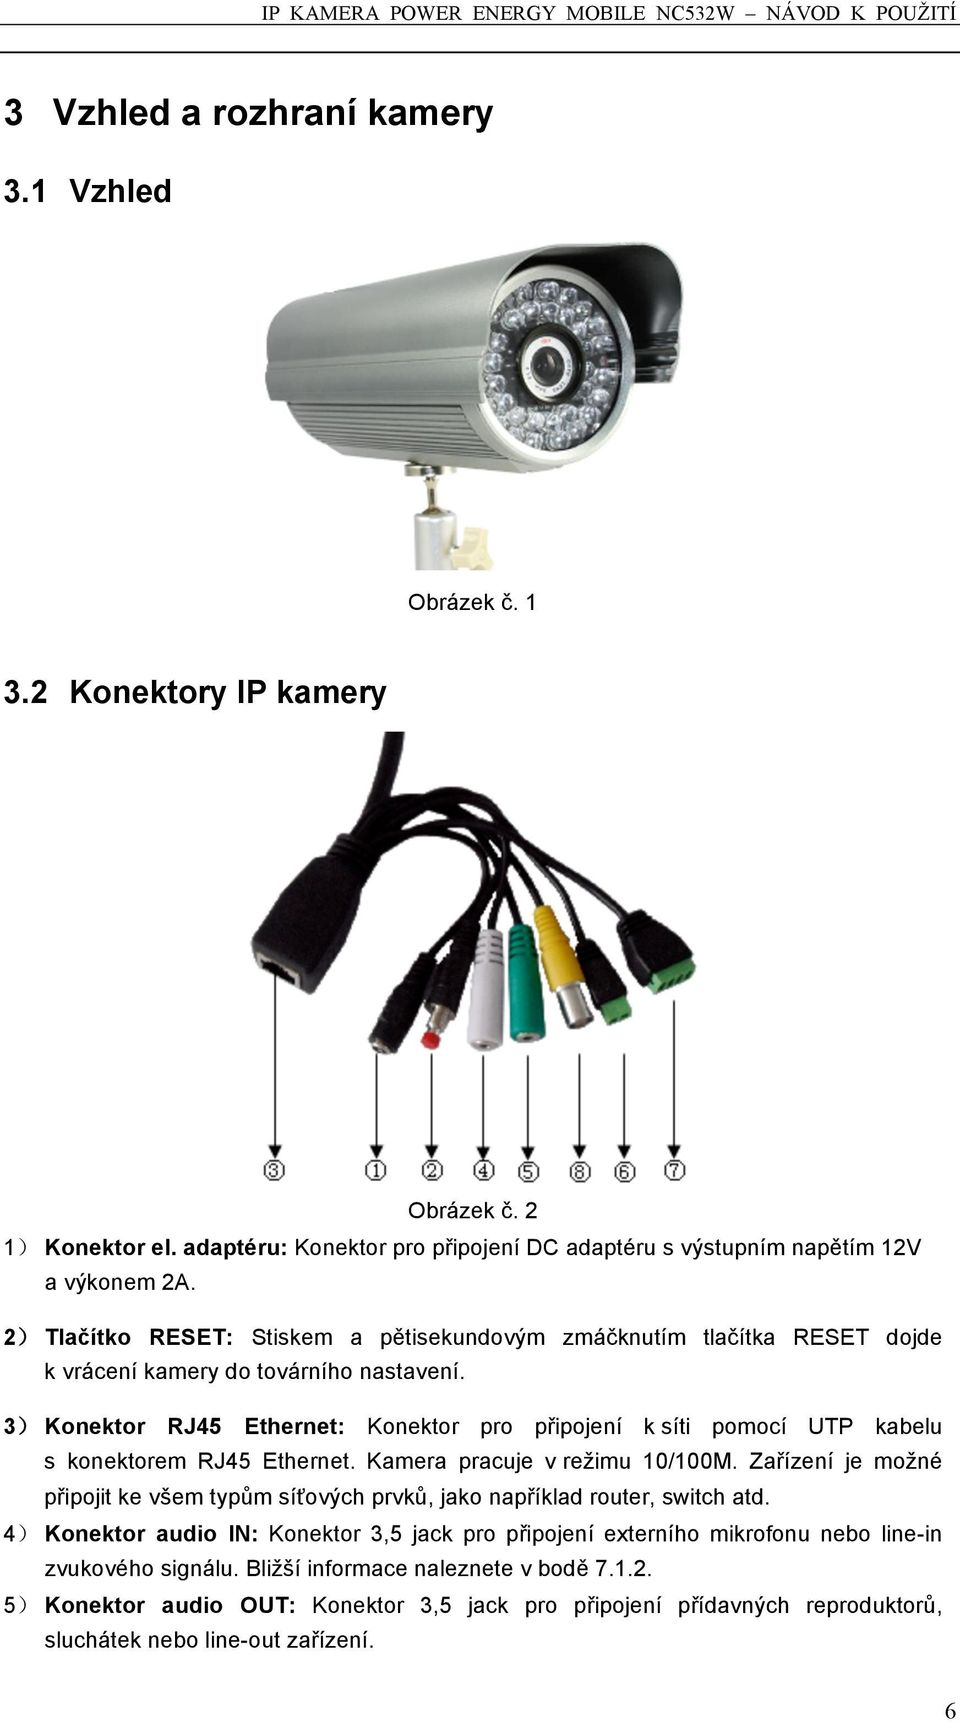 3) Konektor RJ45 Ethernet: Konektor pro připojení k síti pomocí UTP kabelu s konektorem RJ45 Ethernet. Kamera pracuje v režimu 10/100M.